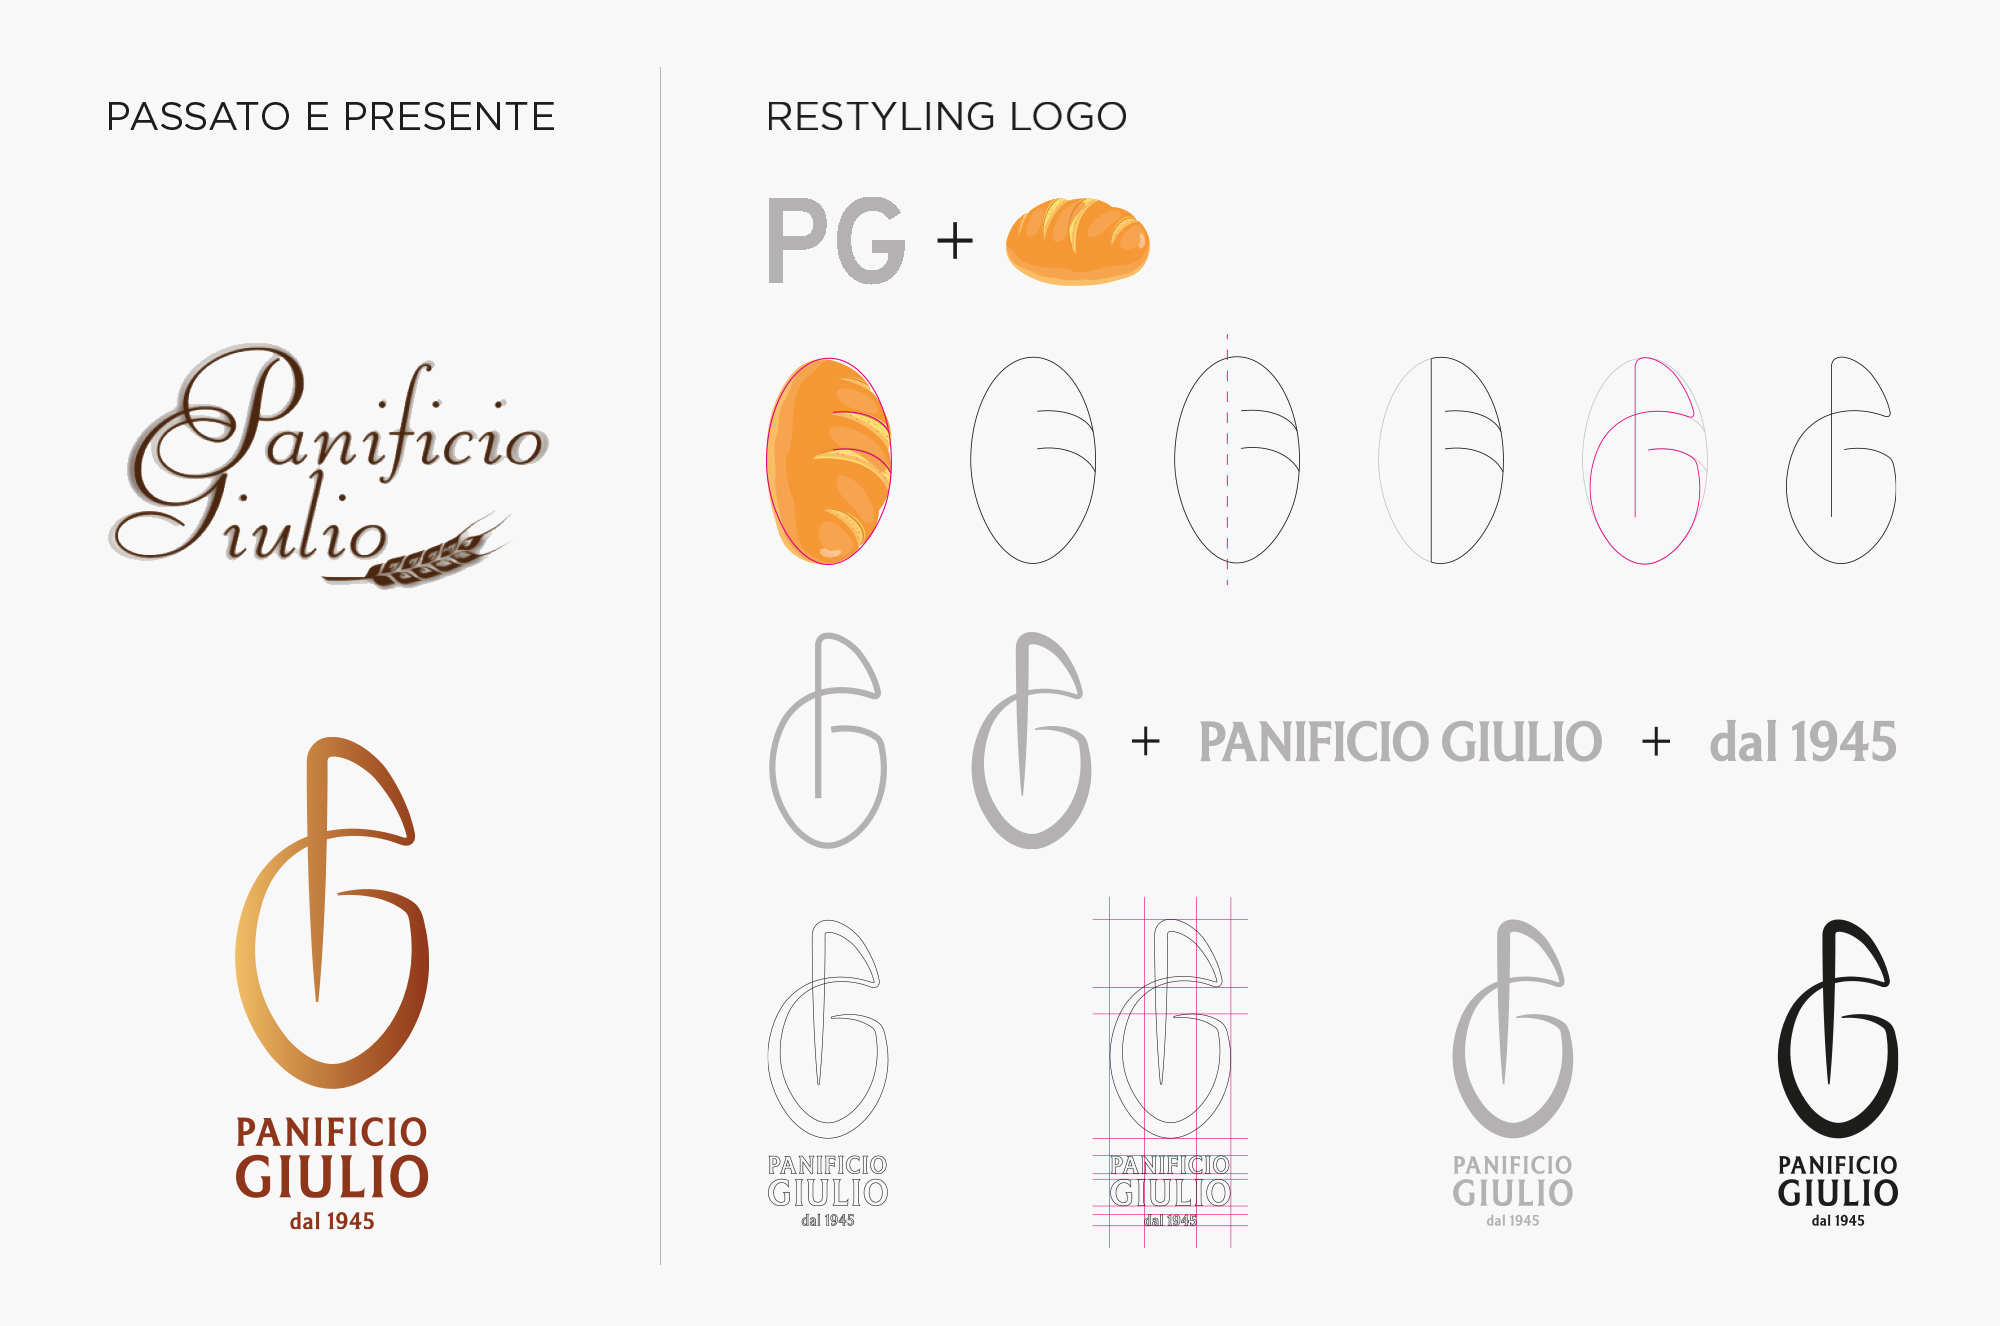 Caso studio Panificio Giulio: restyling del logo